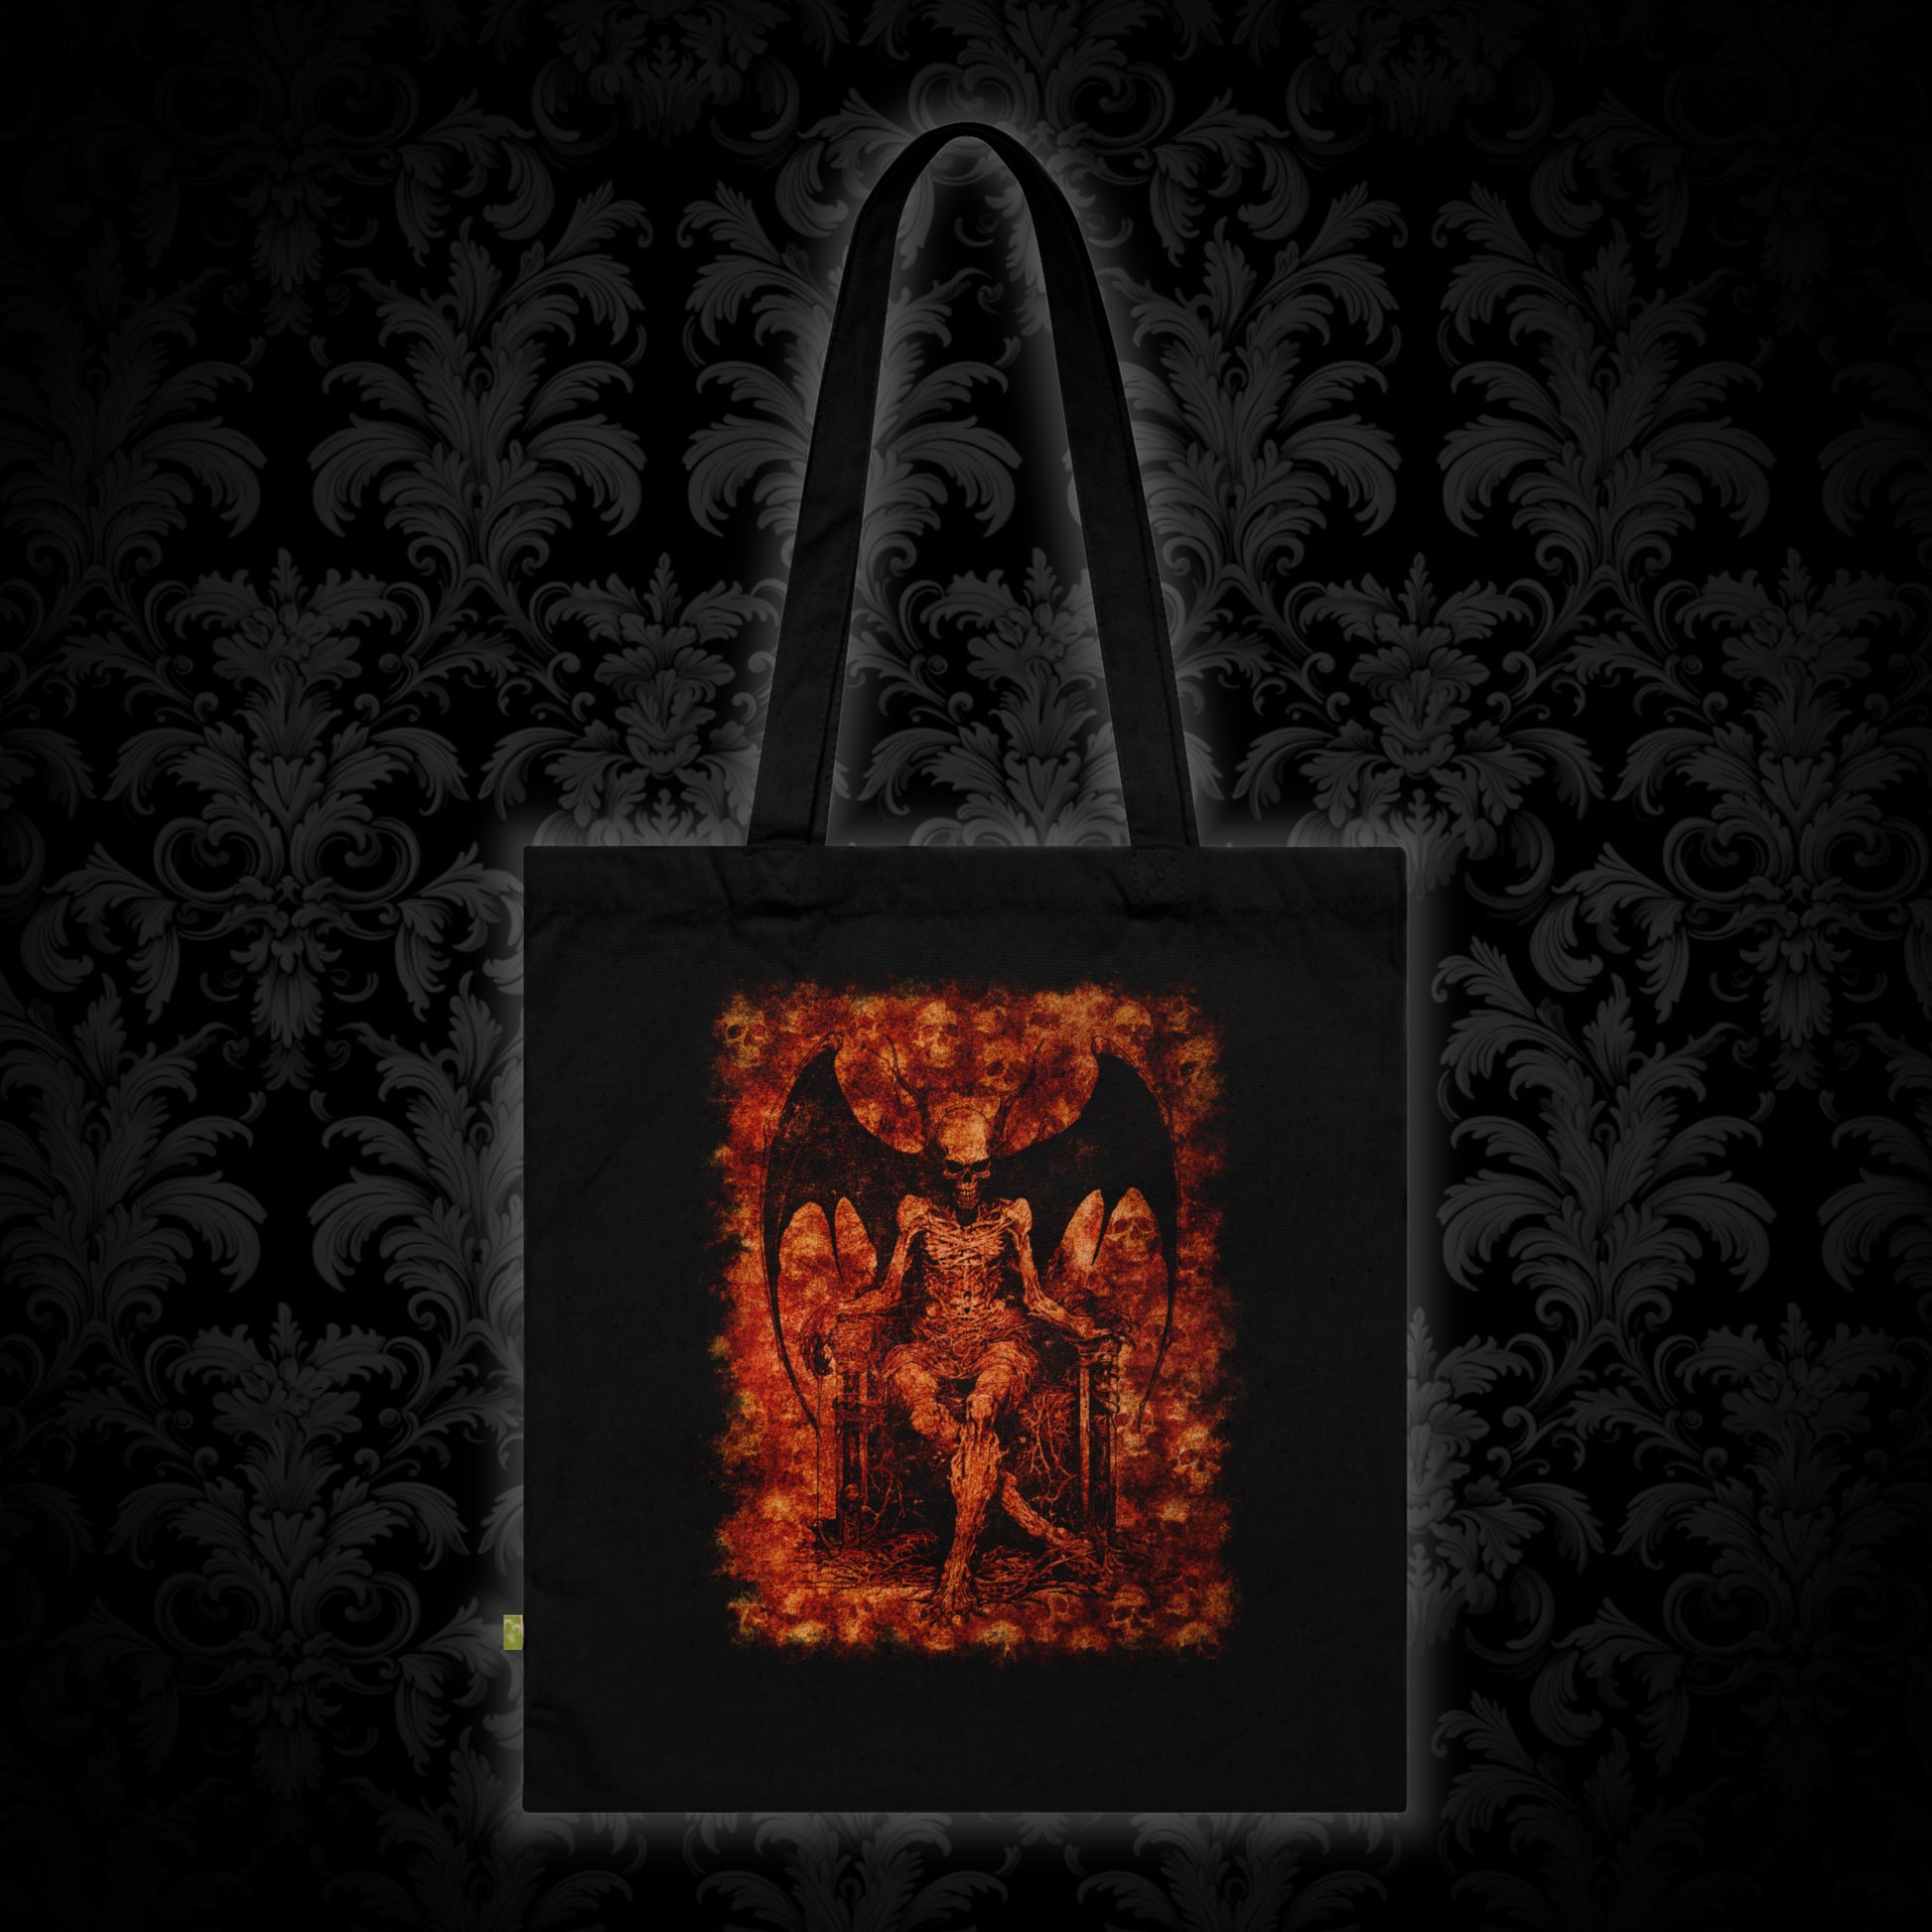 Tote Bag Devil on his Throne in Orange - Frogos Design